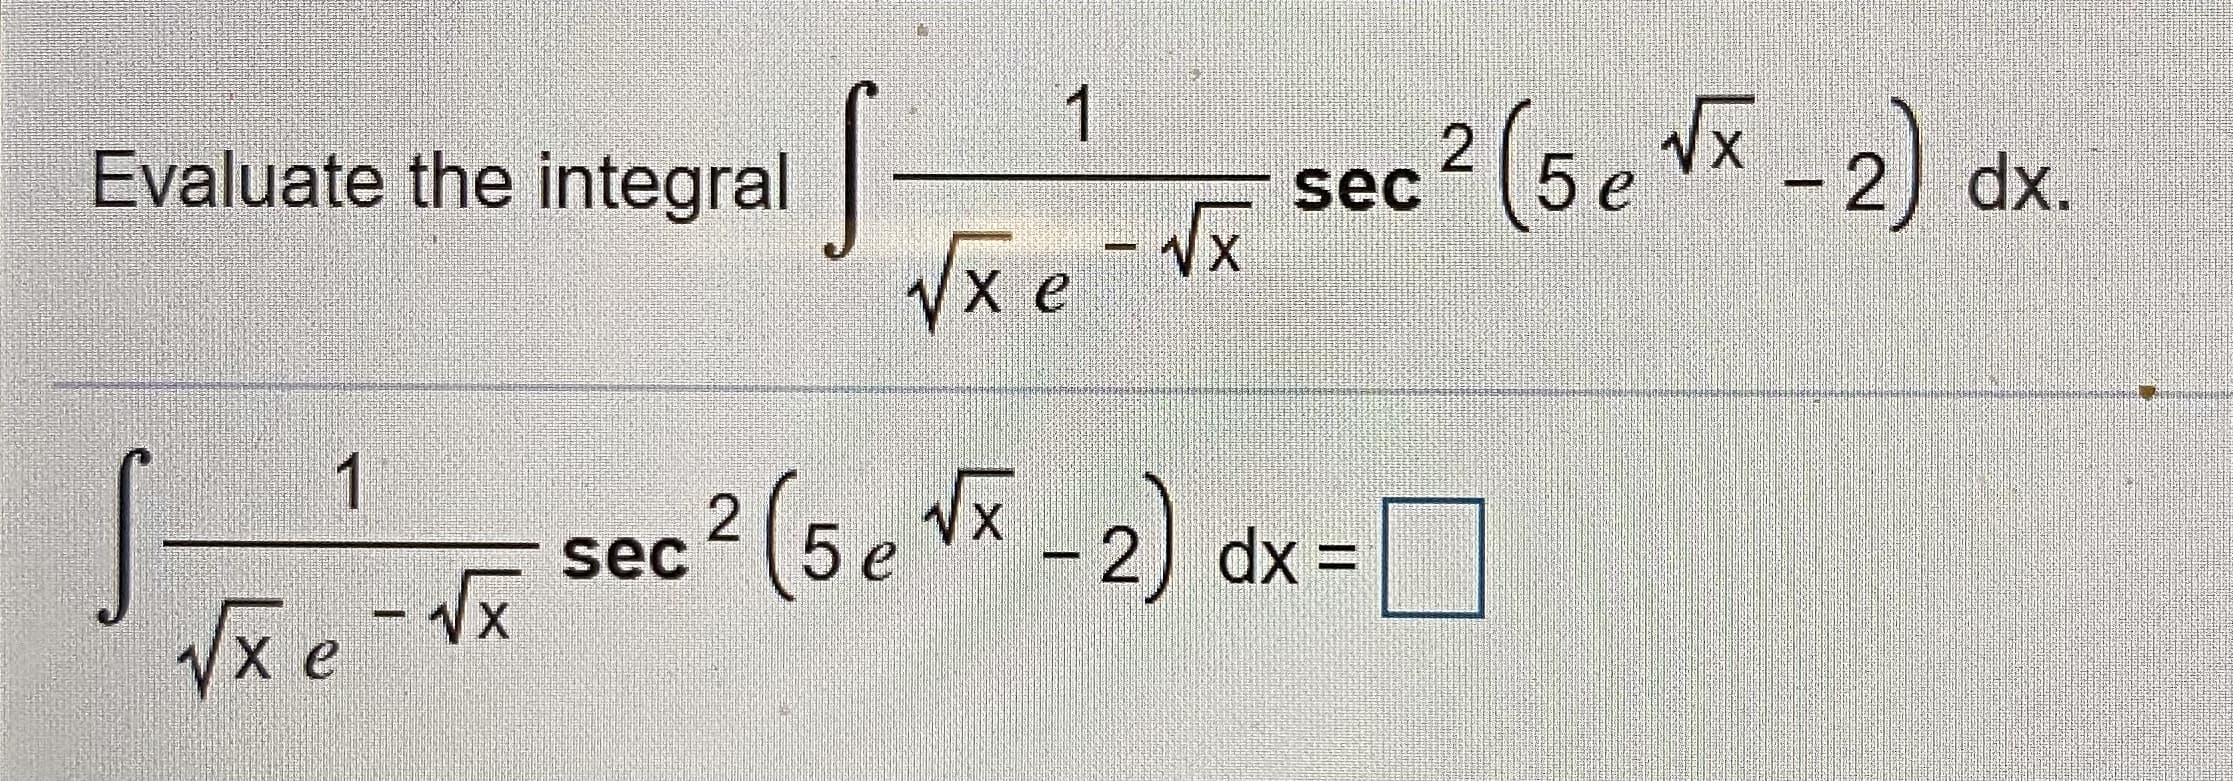 1
Evaluate the integral-
sec 2 (5e Vã -2) dx
Vx e
- Vx
1
sec? (5e -2) dx=
Vxe-Vx
